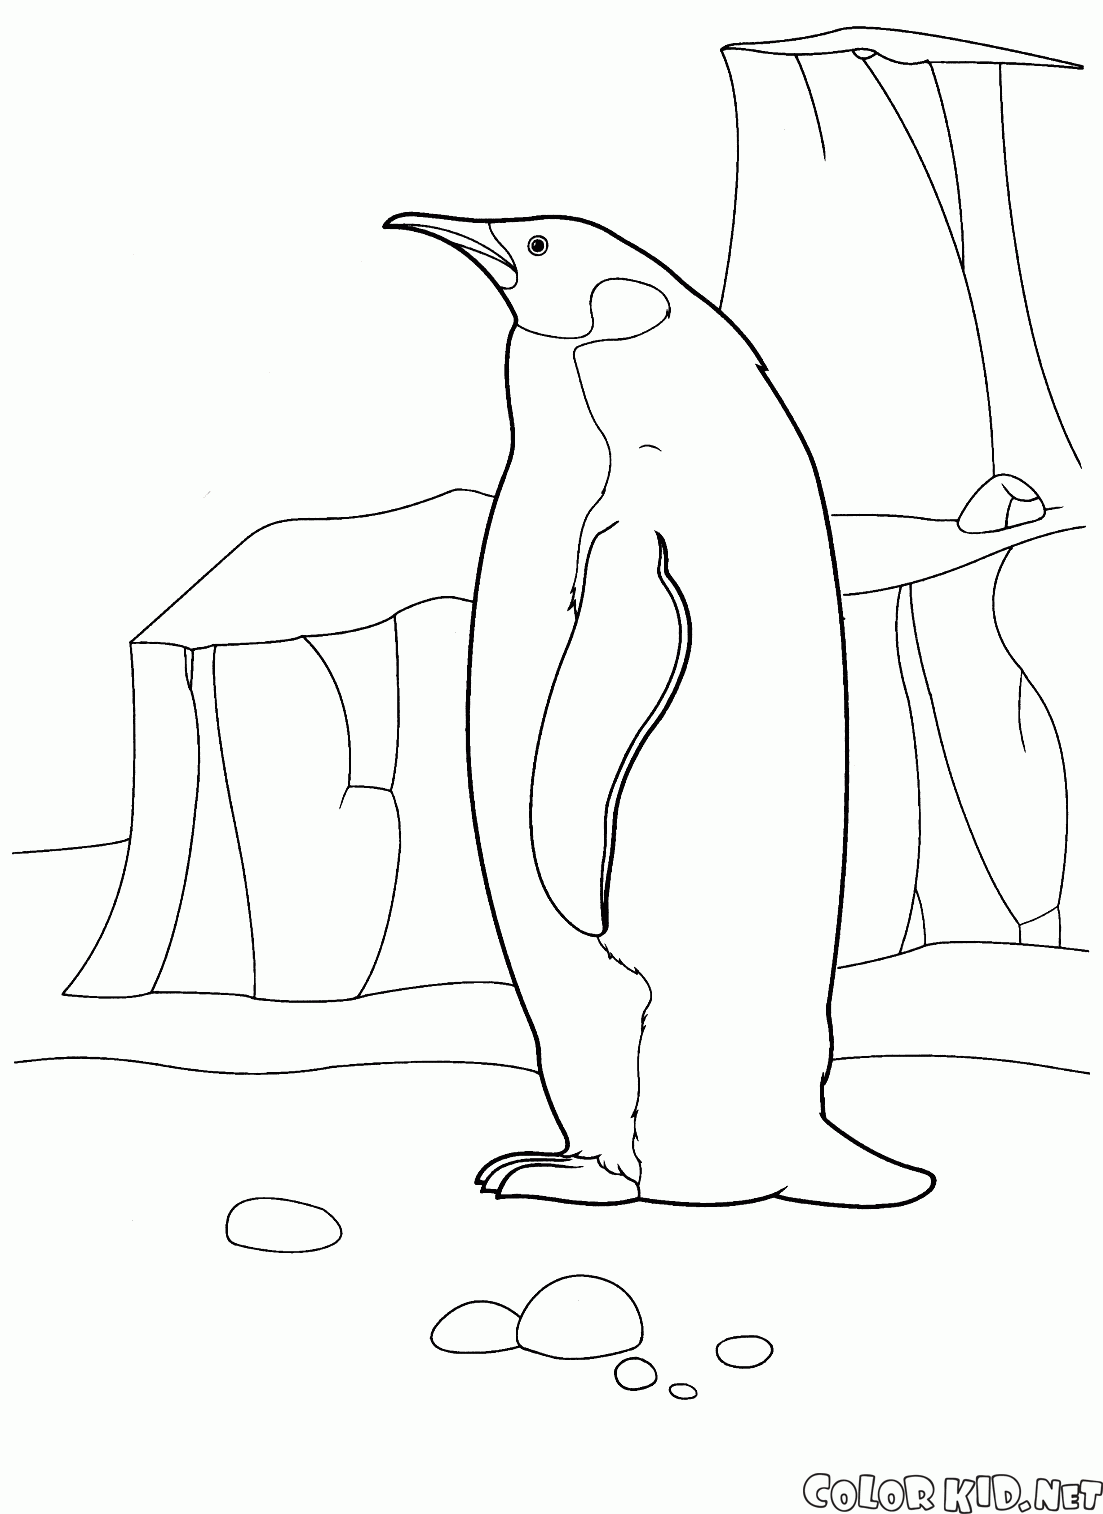 Penguin nellArtico